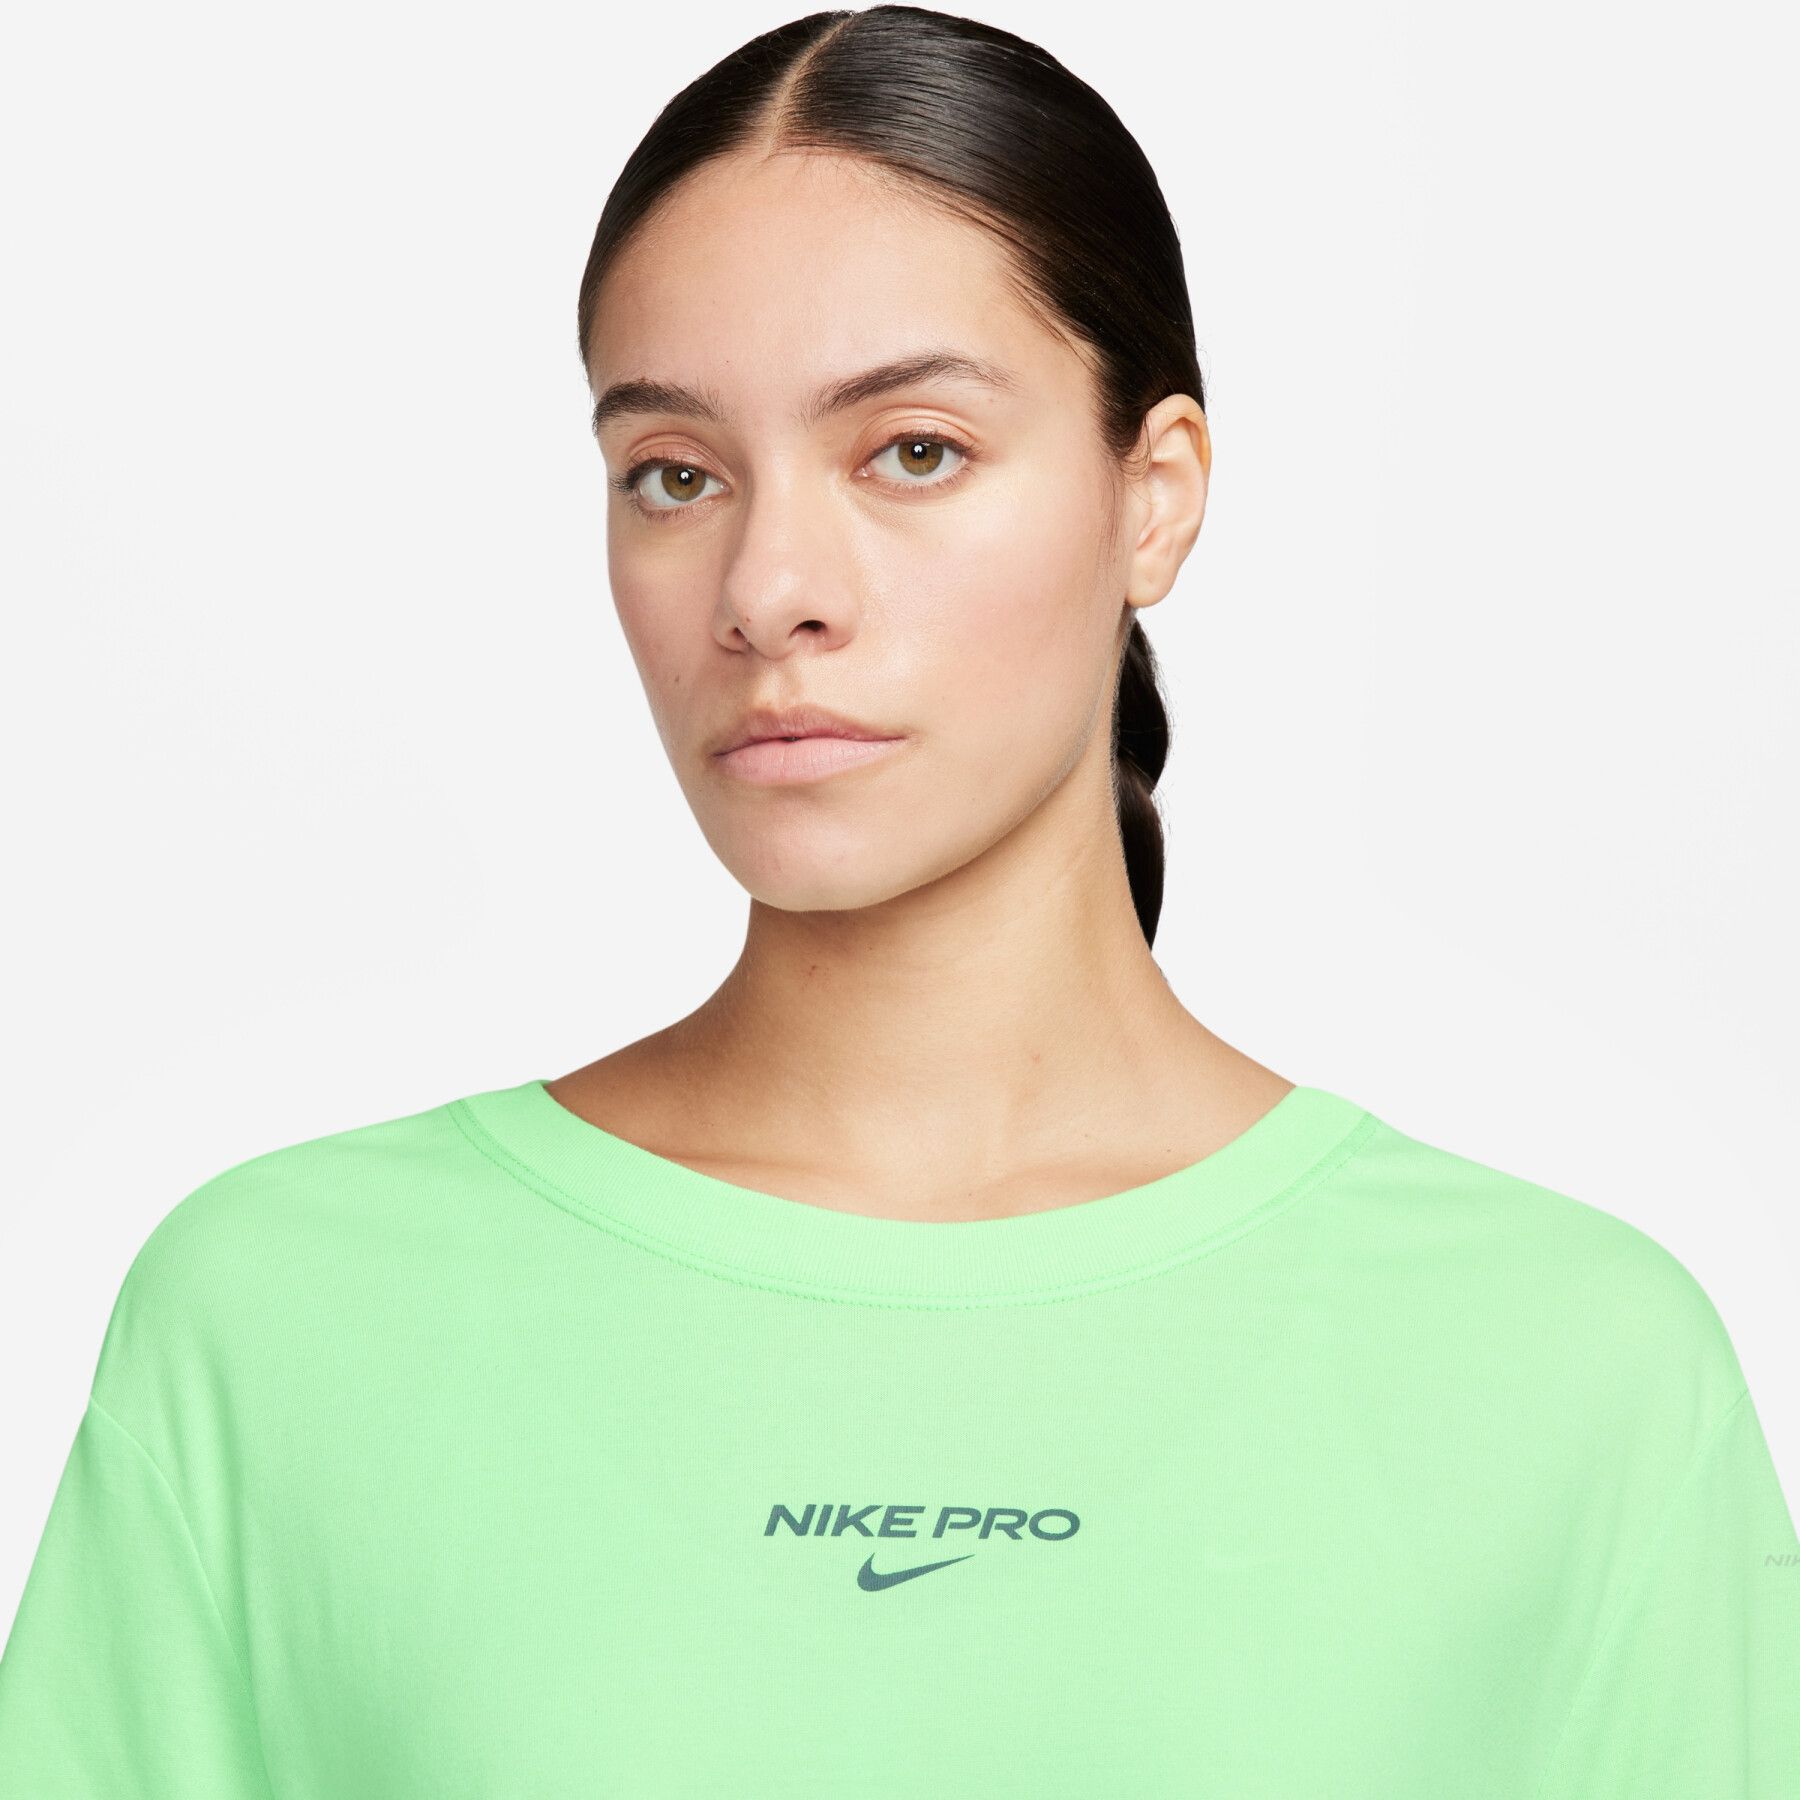 Nike Pro Women's T-Shirt